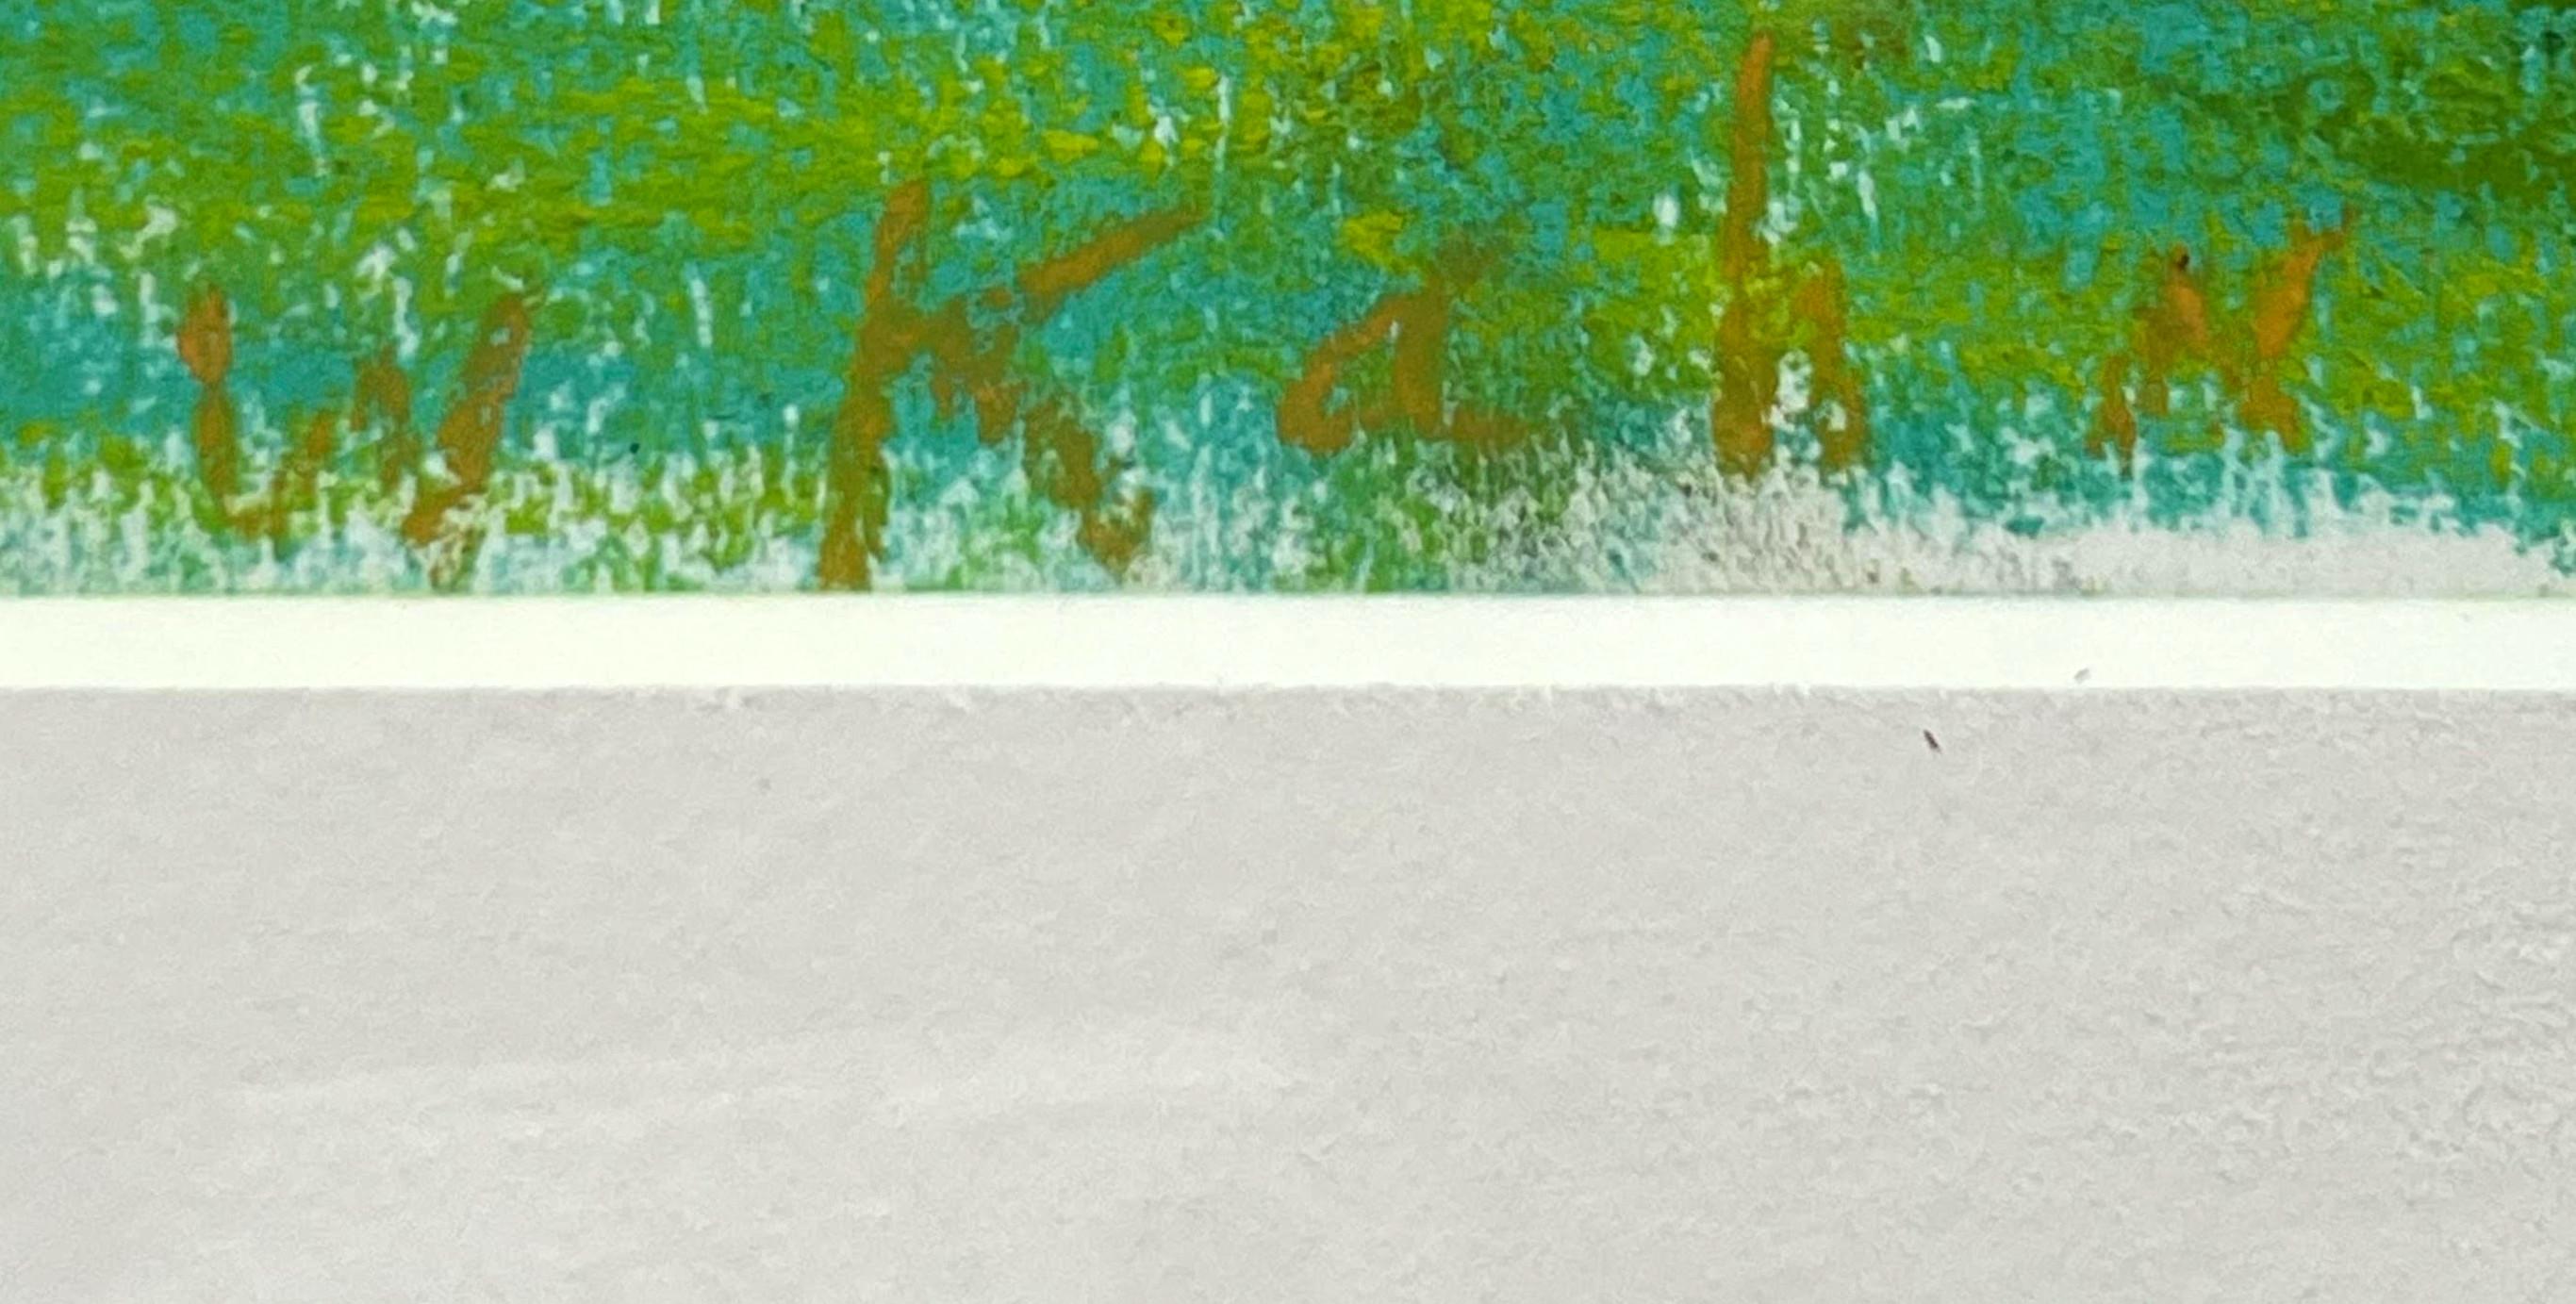 Wolf Kahn
Blau-Grün, 2000
Pastellmalerei auf Papier
Signiert auf der Vorderseite unten links
Inklusive Rahmen: elegant gerahmt in einem weißen Holzrahmen in Museumsqualität mit UV-Plexiglas
mit originalem Galerie Brockstedt Label verso
Provenienz: